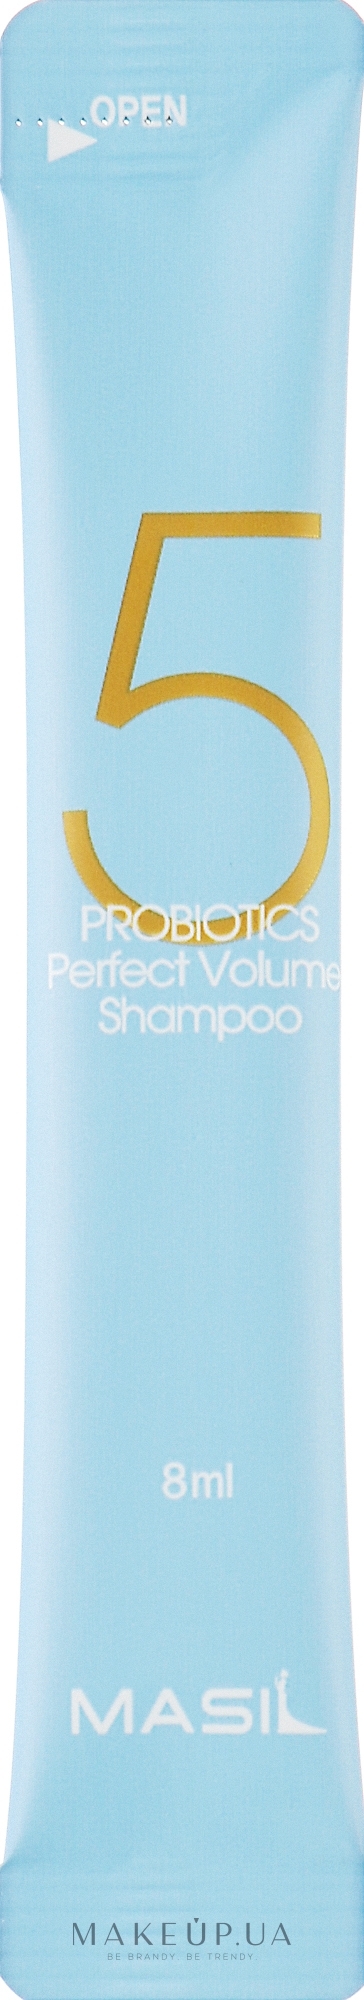 Шампунь с пробиотиками для идеального объема волос - Masil 5 Probiotics Perfect Volume Shampoo (пробник) — фото 8ml